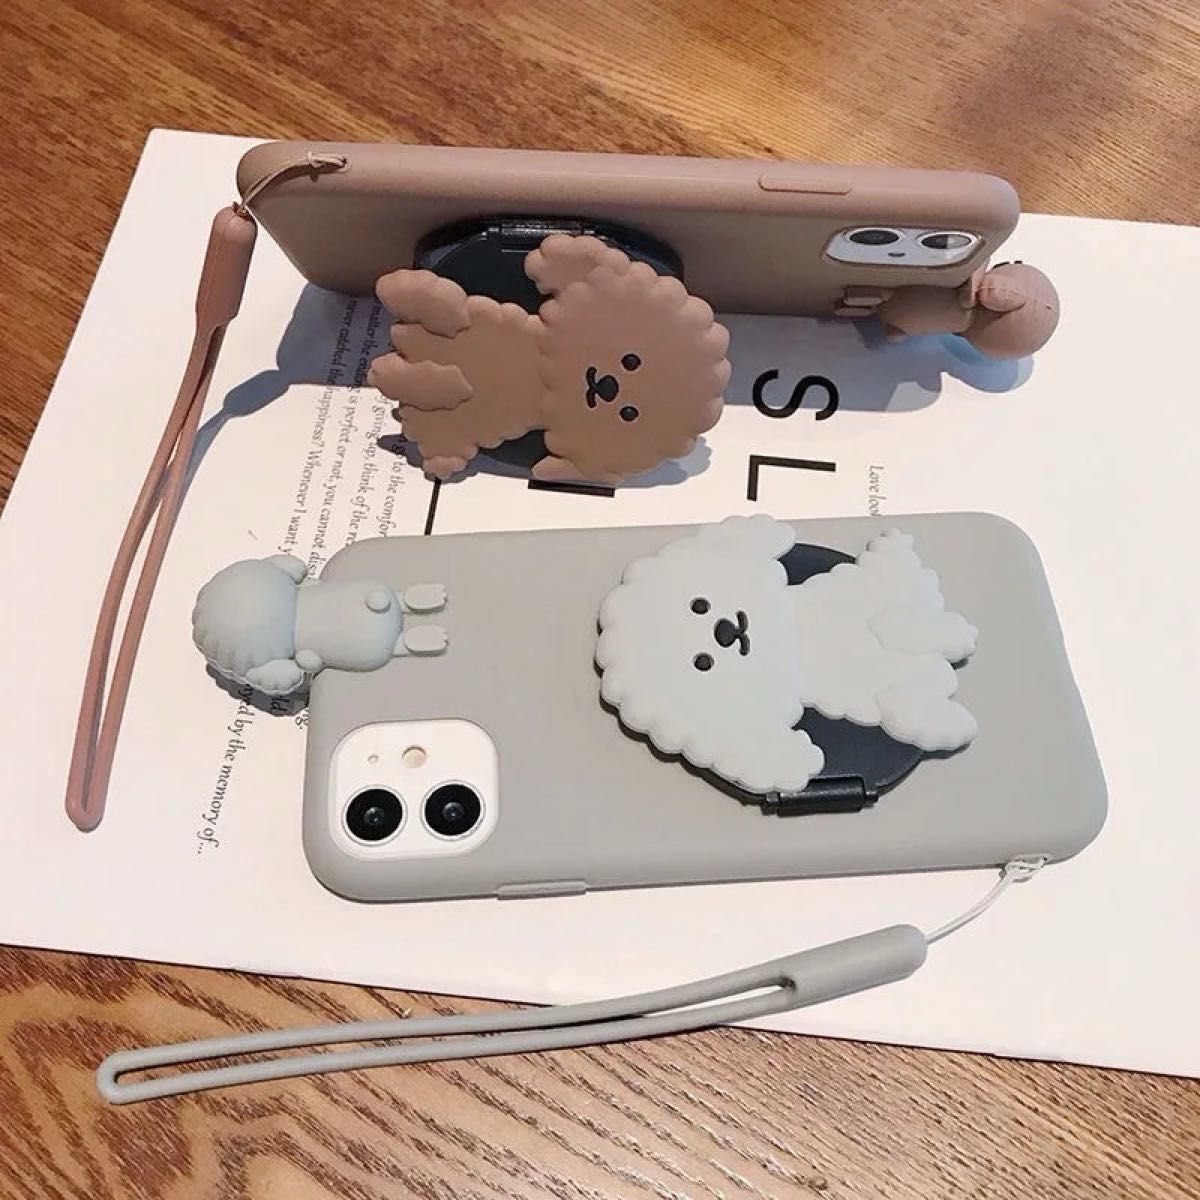 【※新品】iPhoneケース カバー トイプードル 犬 ブラウン 茶色 鏡 かわいい ミラー付き ハンドストラップ付き